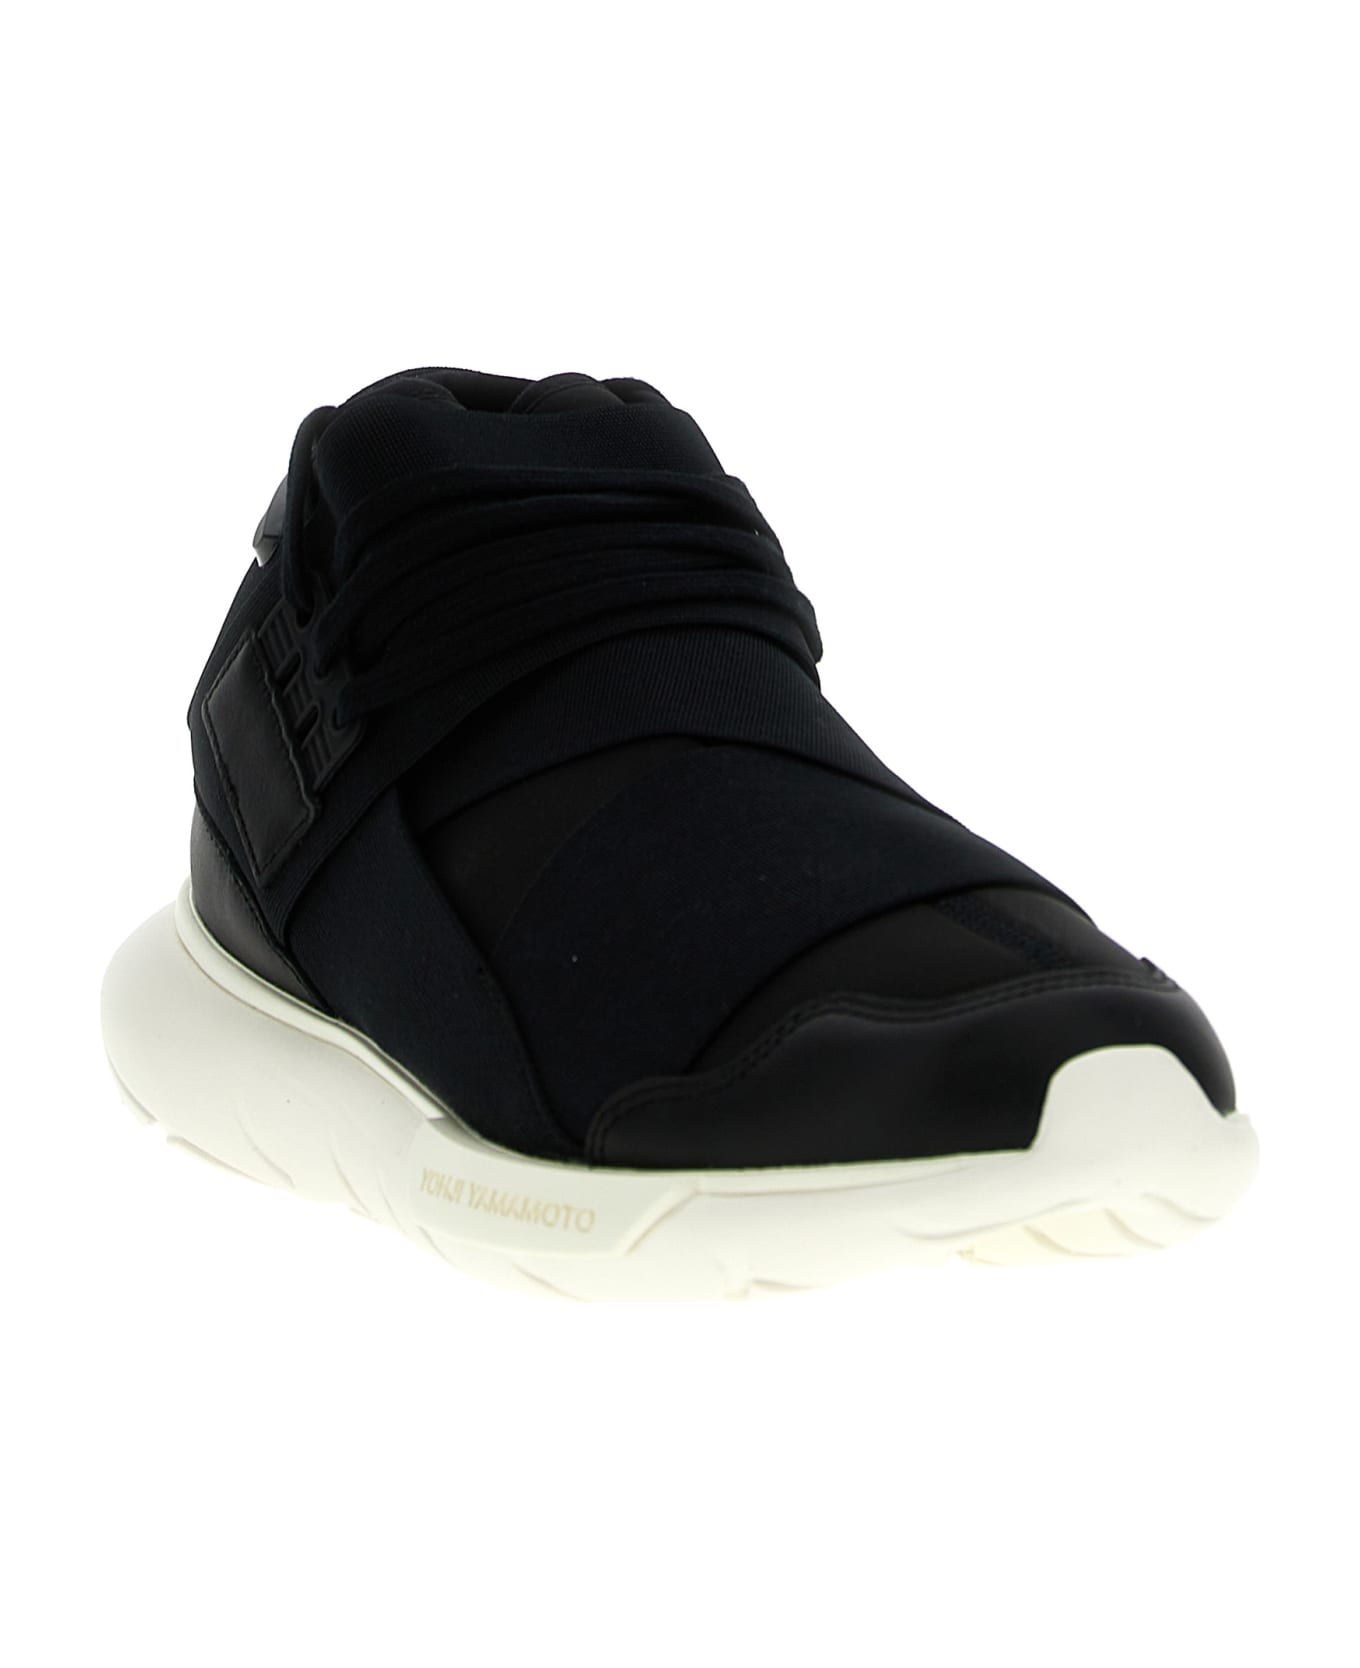 Y-3 'qasa' Sneakers Sneakers - BLACK